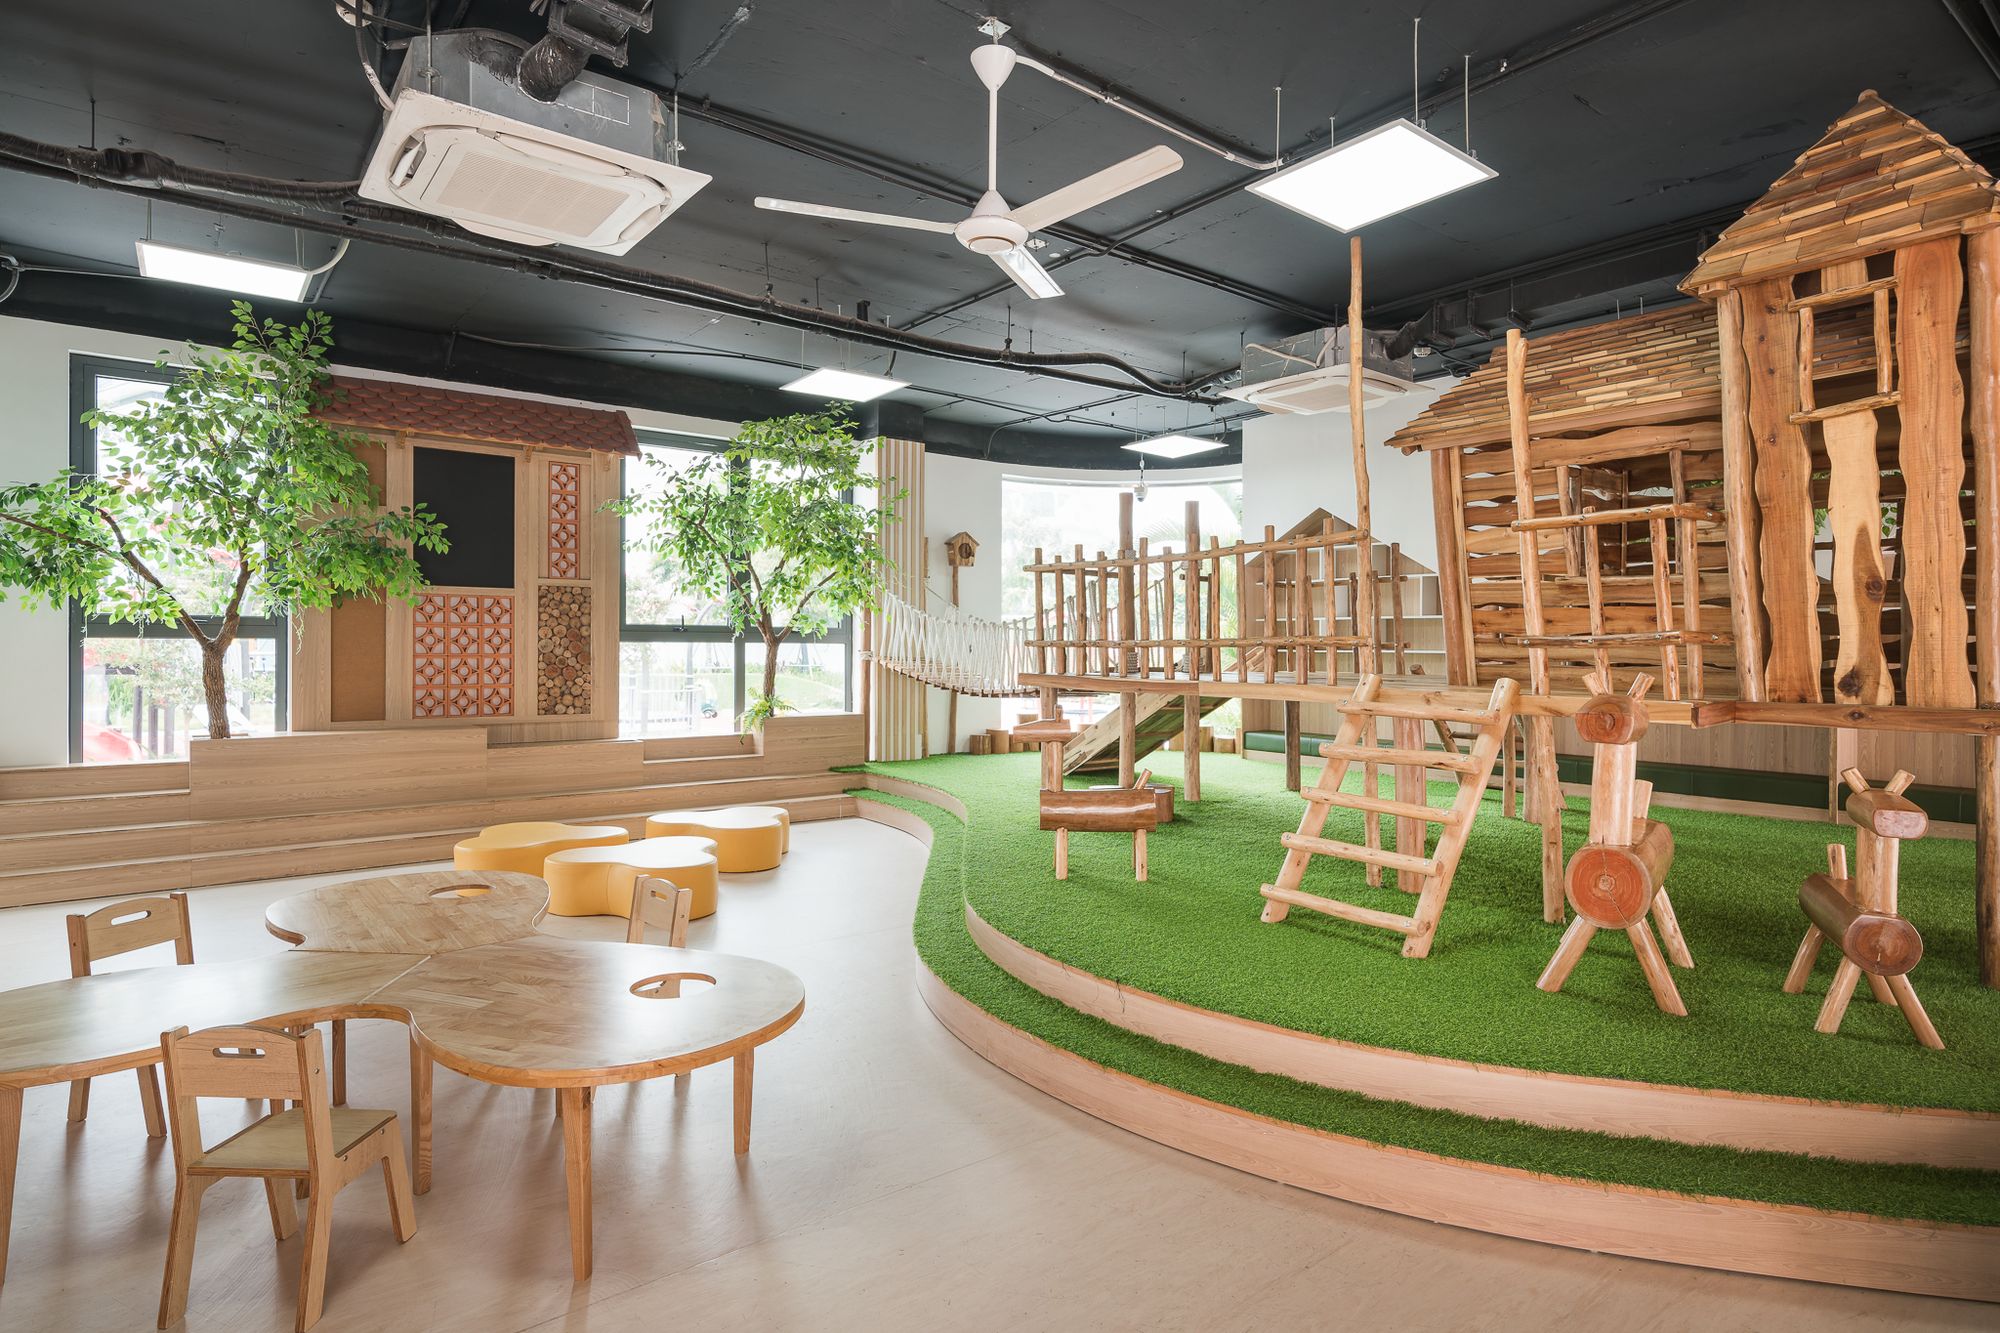 图片[12]|枫熊幼儿园|ART-Arrakis | 建筑室内设计的创新与灵感